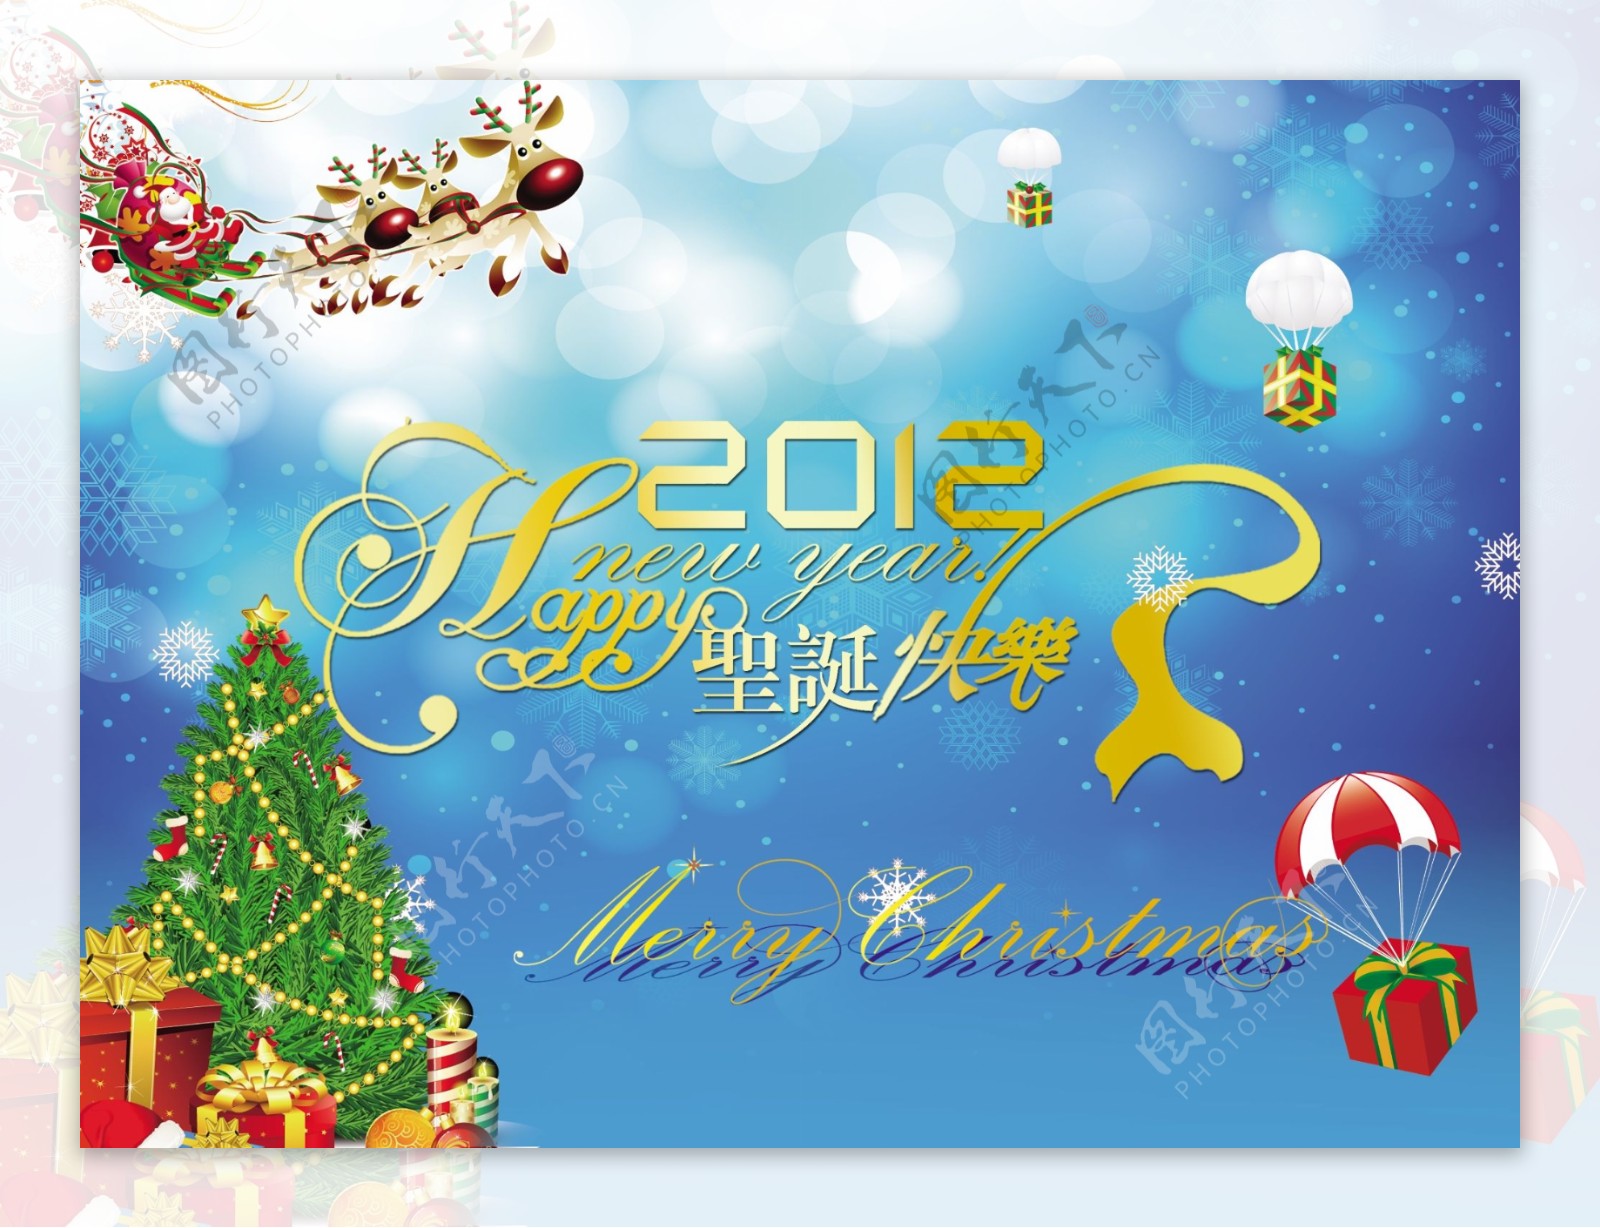 2012圣诞节简洁字体设计PSD素材